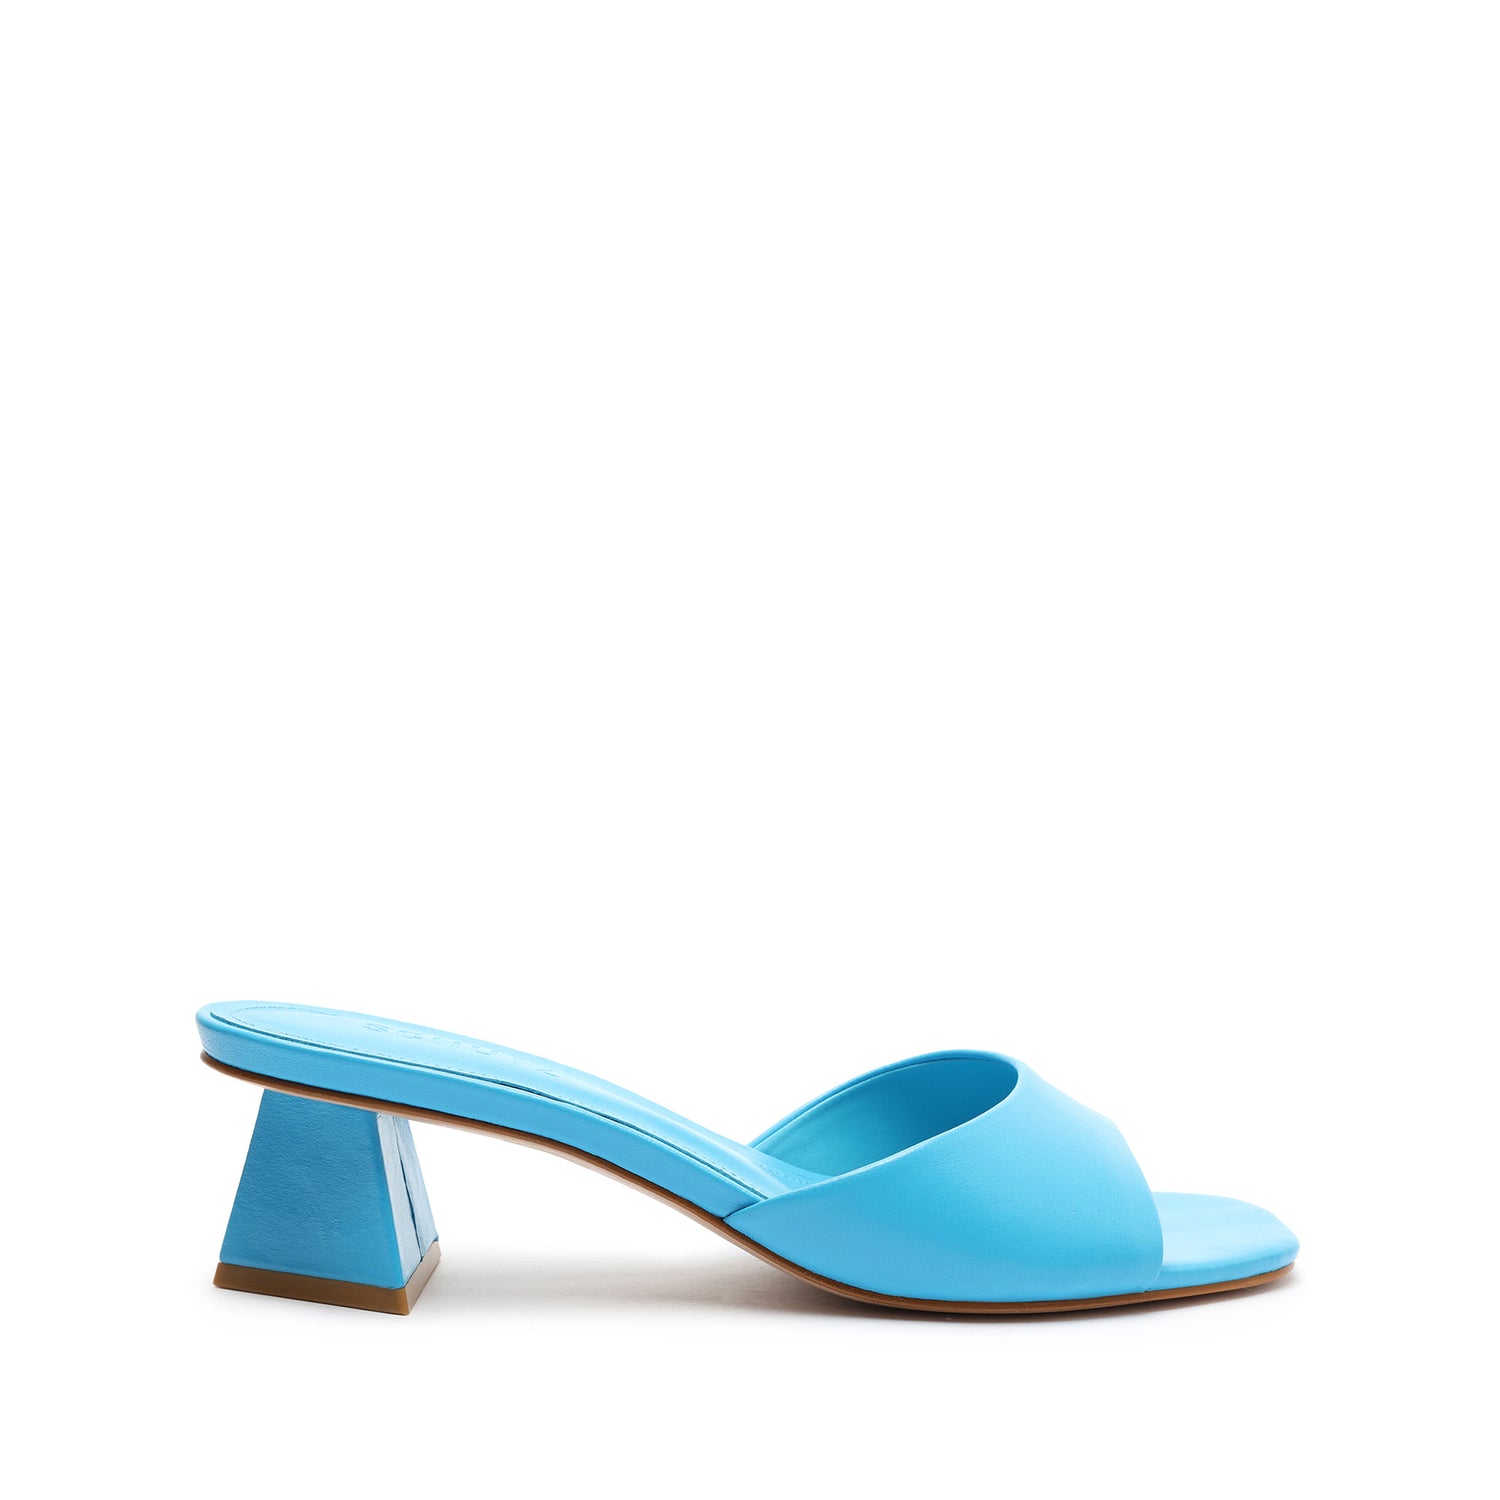 Lizah Lo Leather Sandal Sandals Sale 5 True Blue Leather - Schutz Shoes